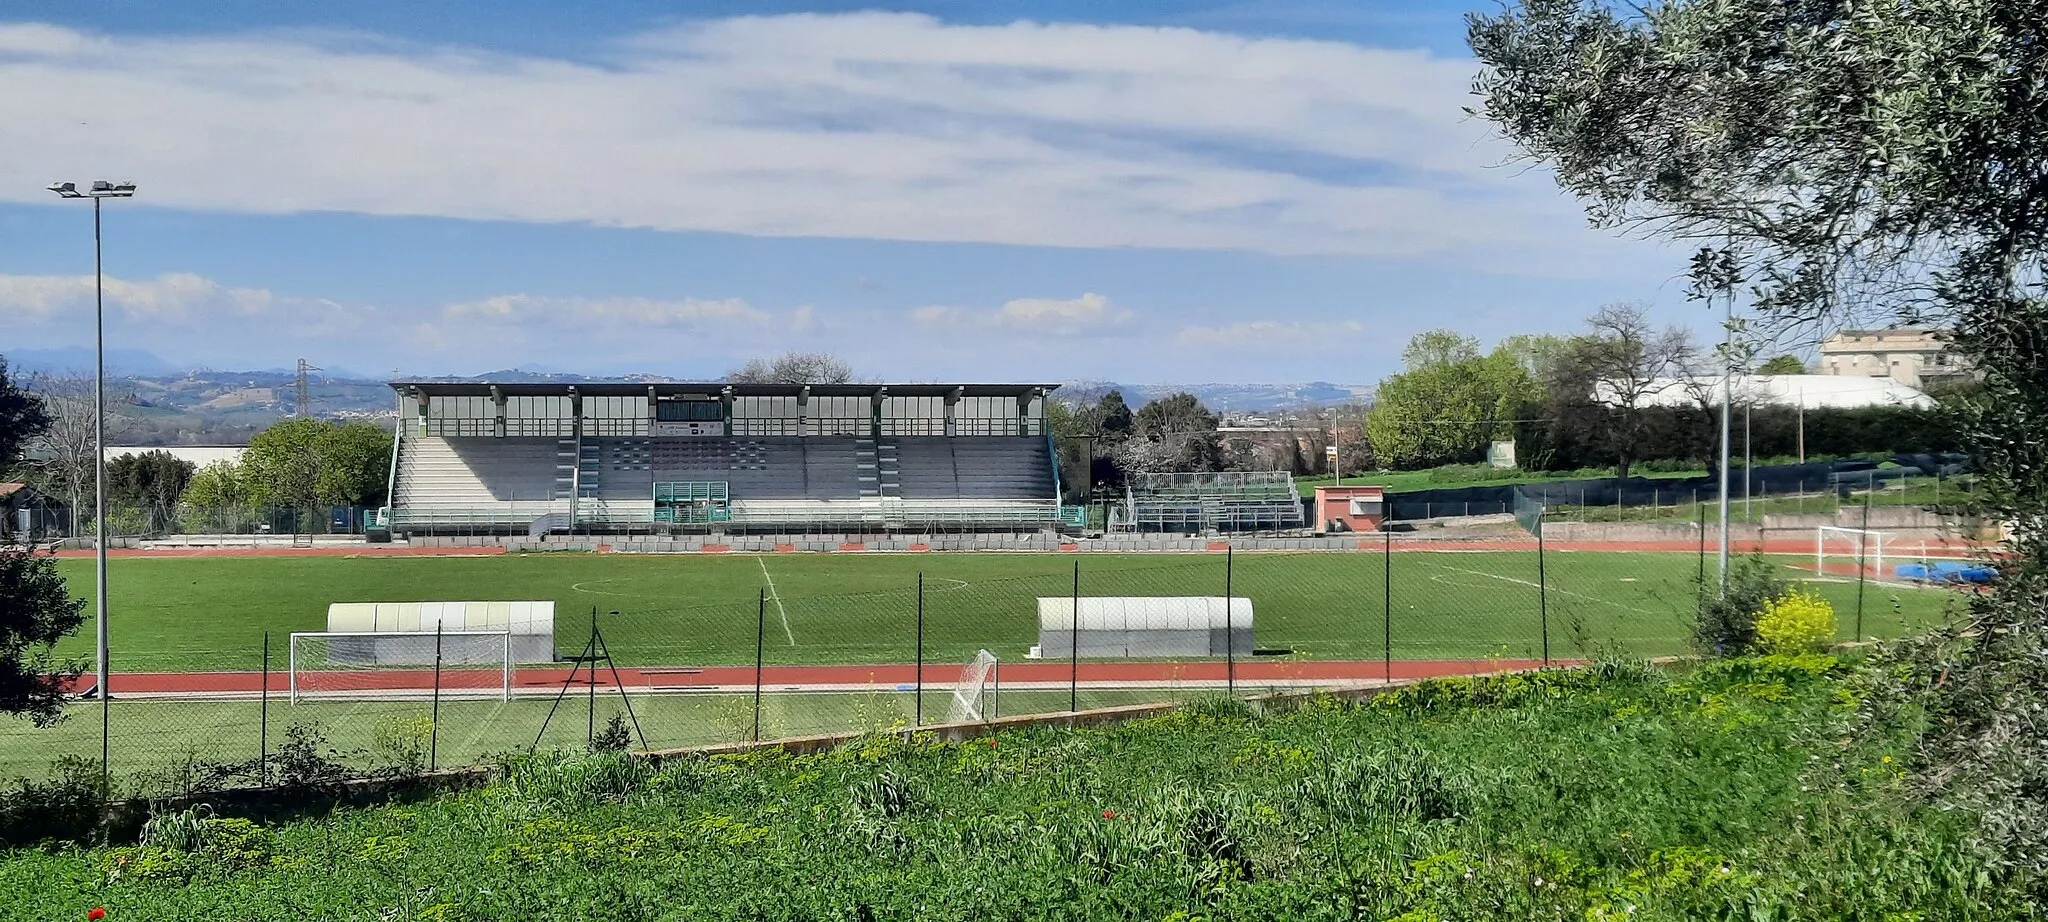 Photo showing: Stadio comunale "Galileo Mancini".